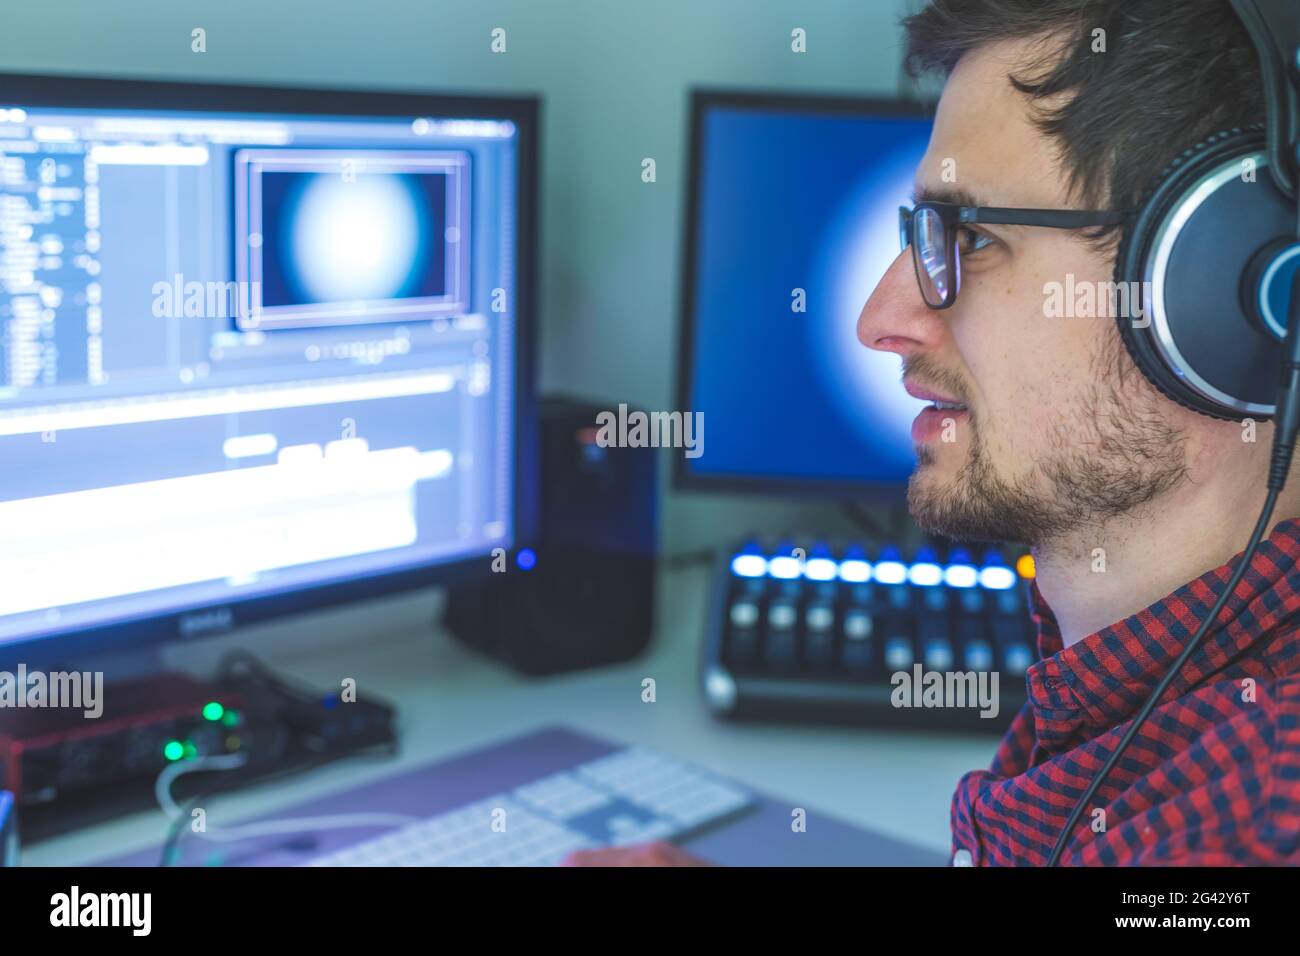 Professioneller Schneideraum für Videobearbeitung und Videoproduktion: Monitore und Tonmischpult Stockfoto